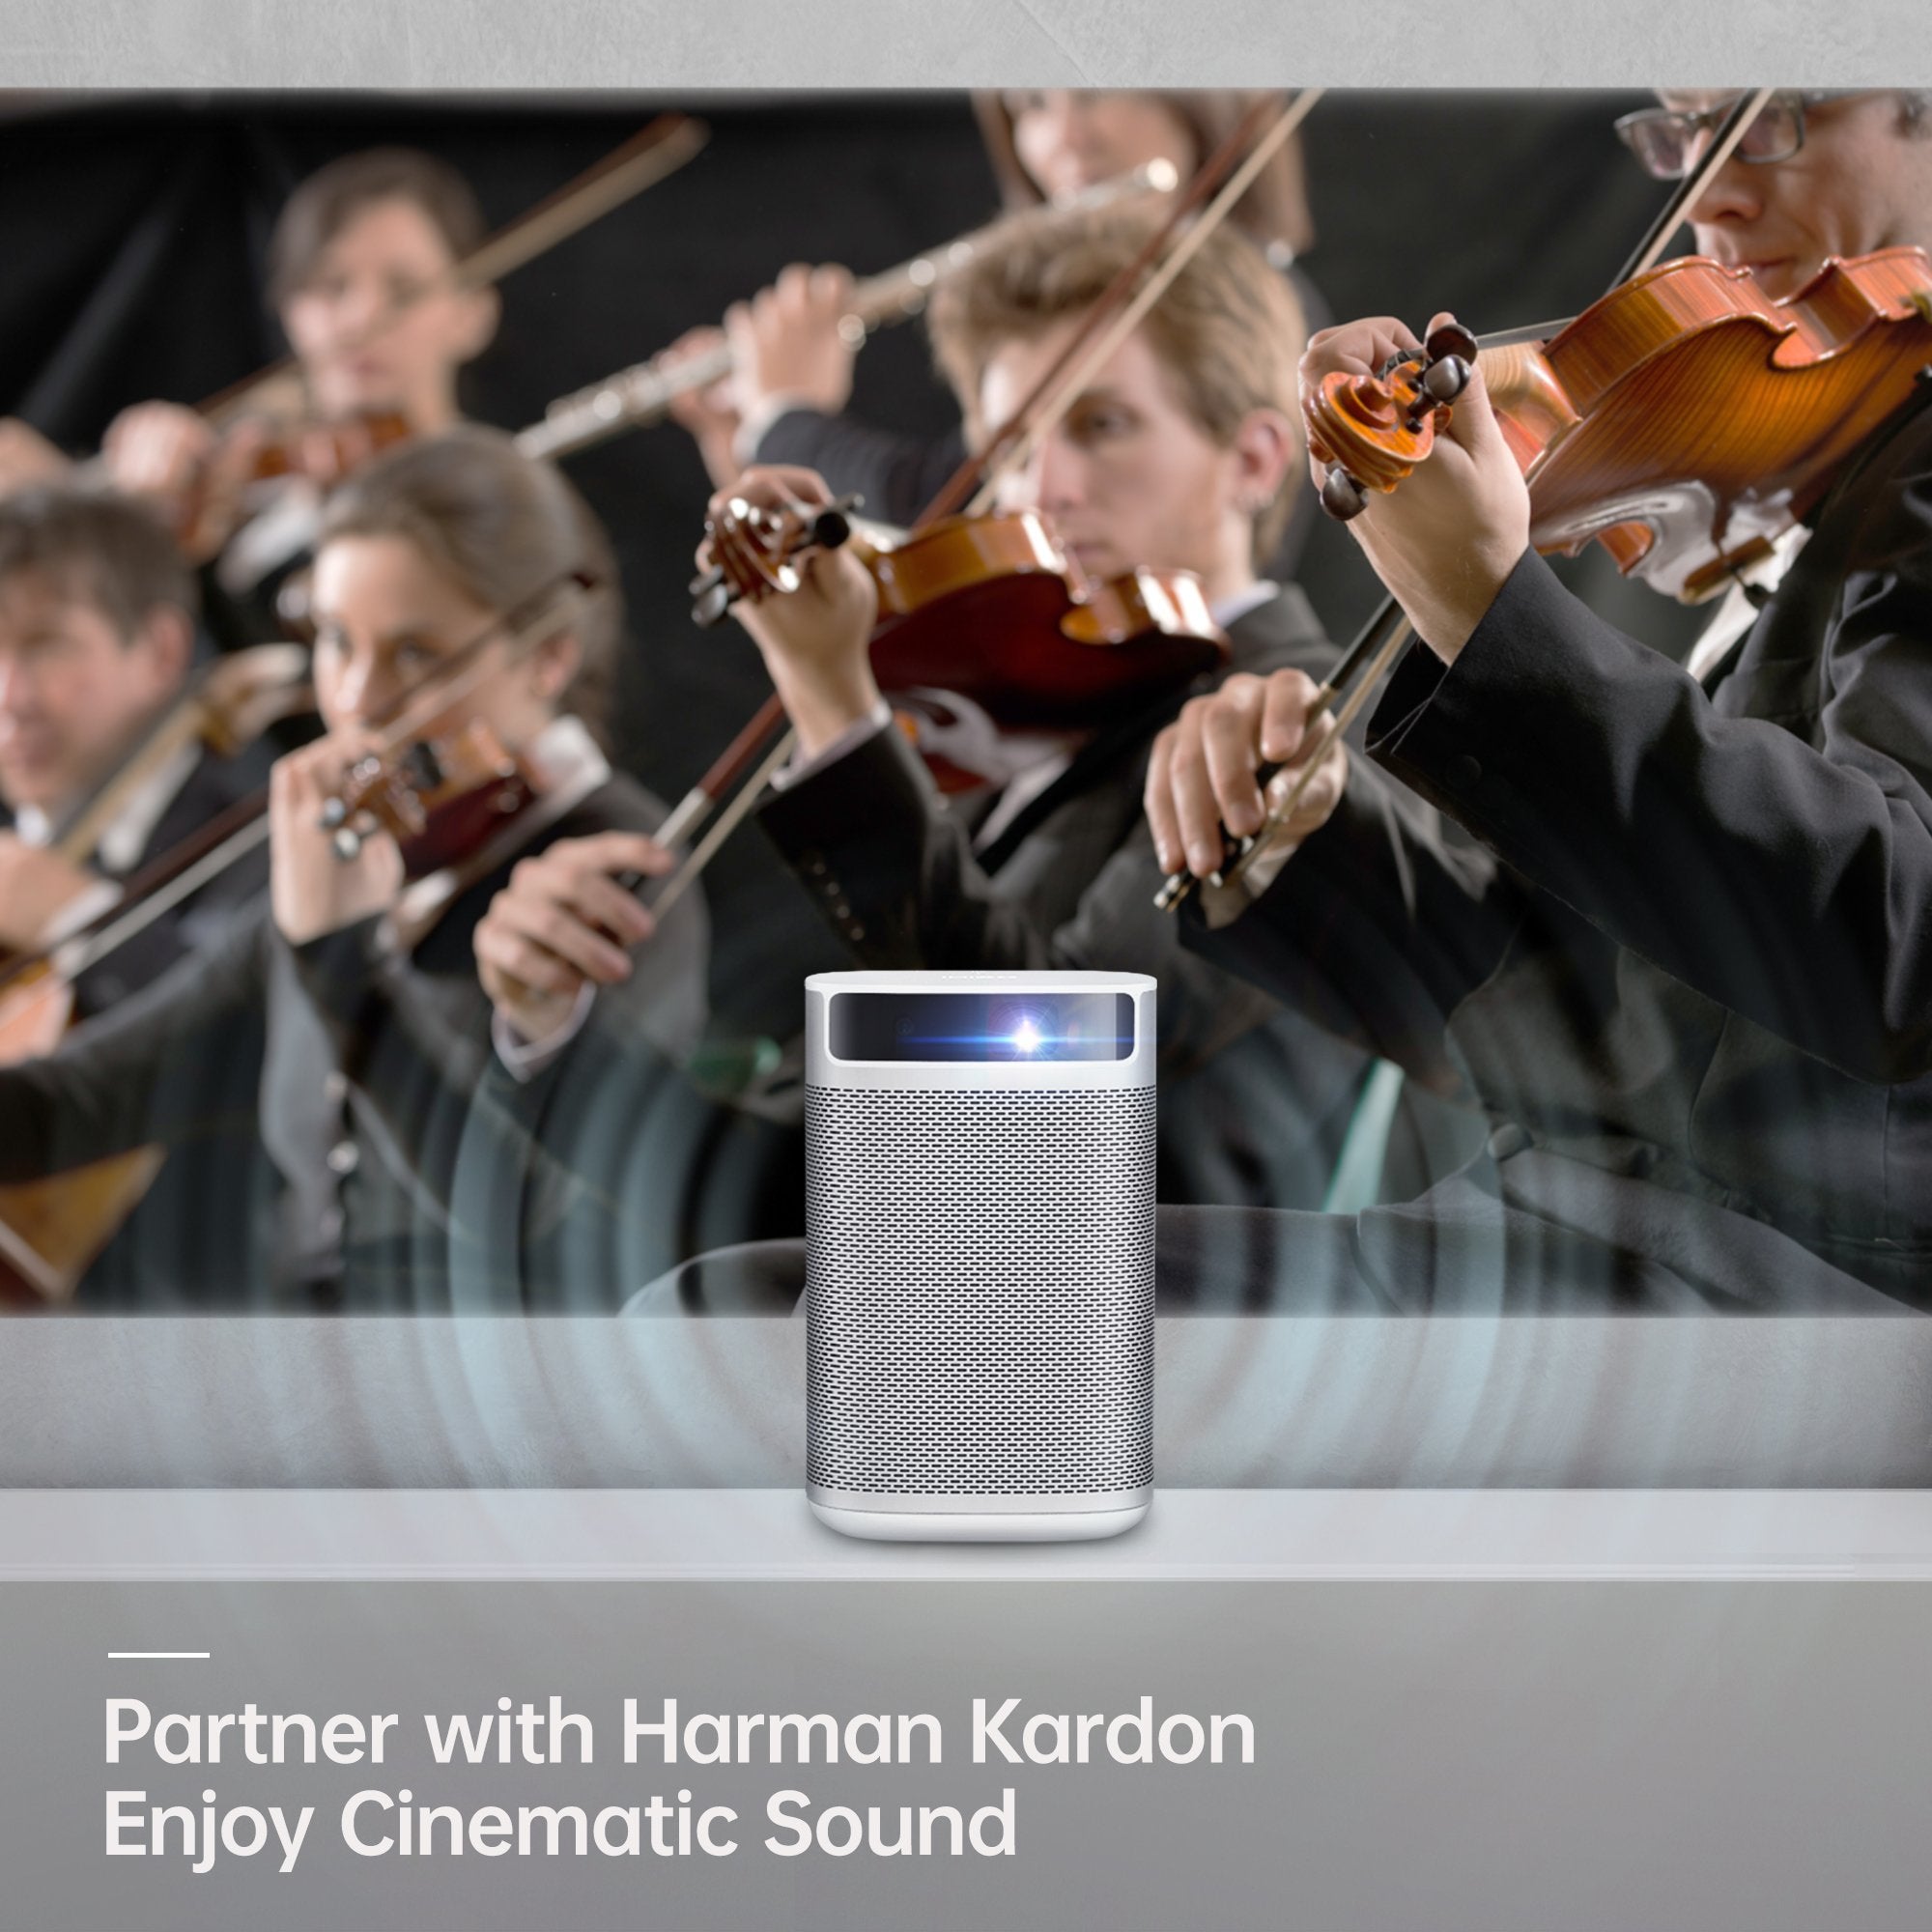 MoGo Pro - pico proyector 1080p - altavoces Harman Kardon integrados